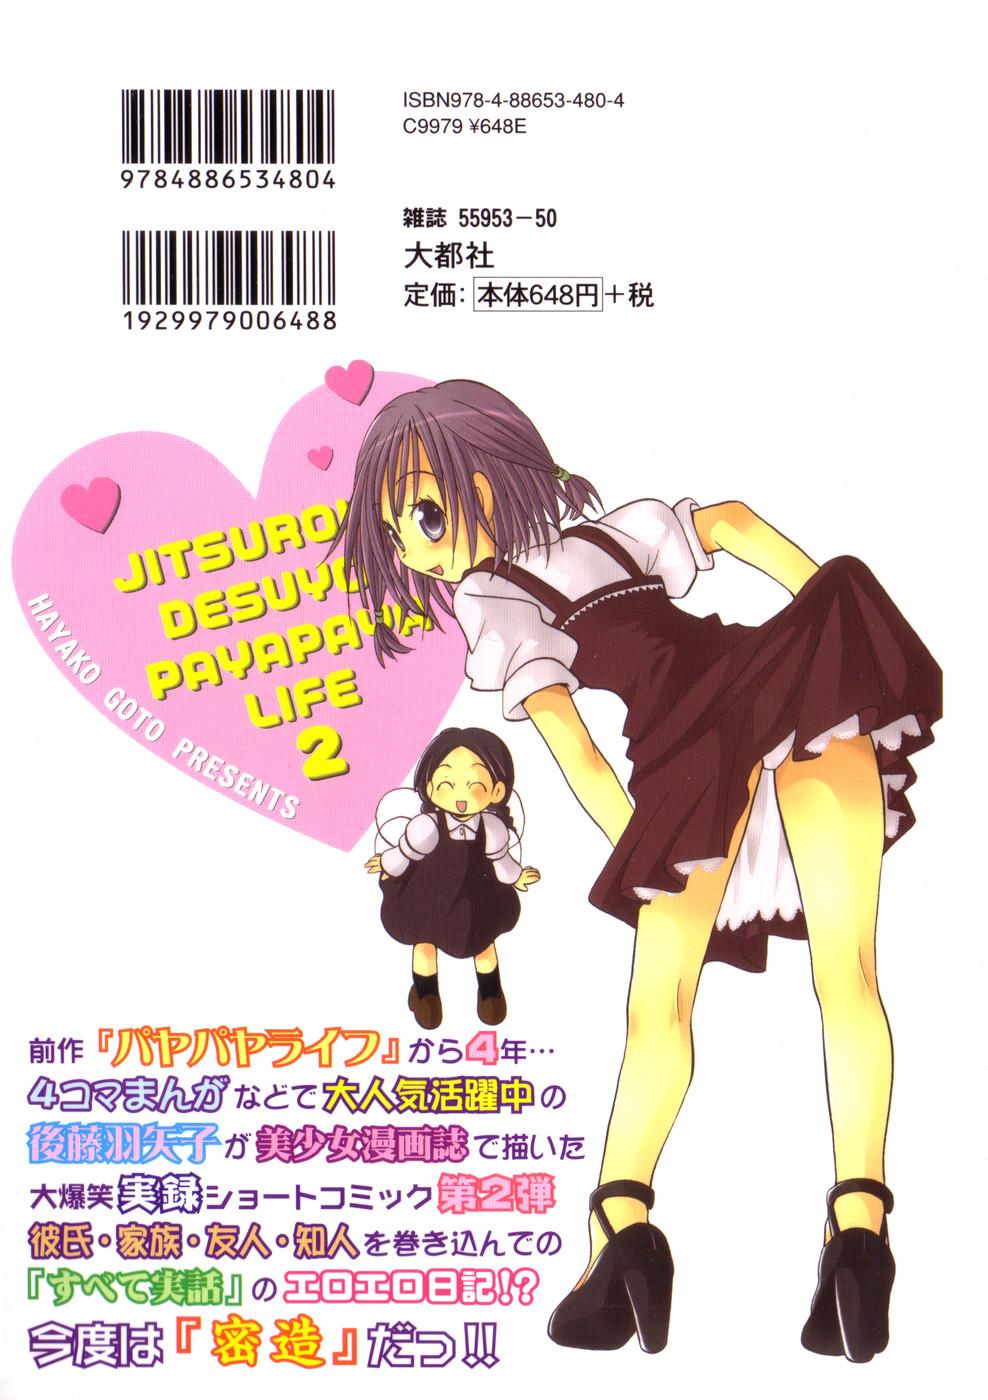 Petite Teenager Jitsuroku Desuyo! Payapaya Life 2 Transvestite - Page 2